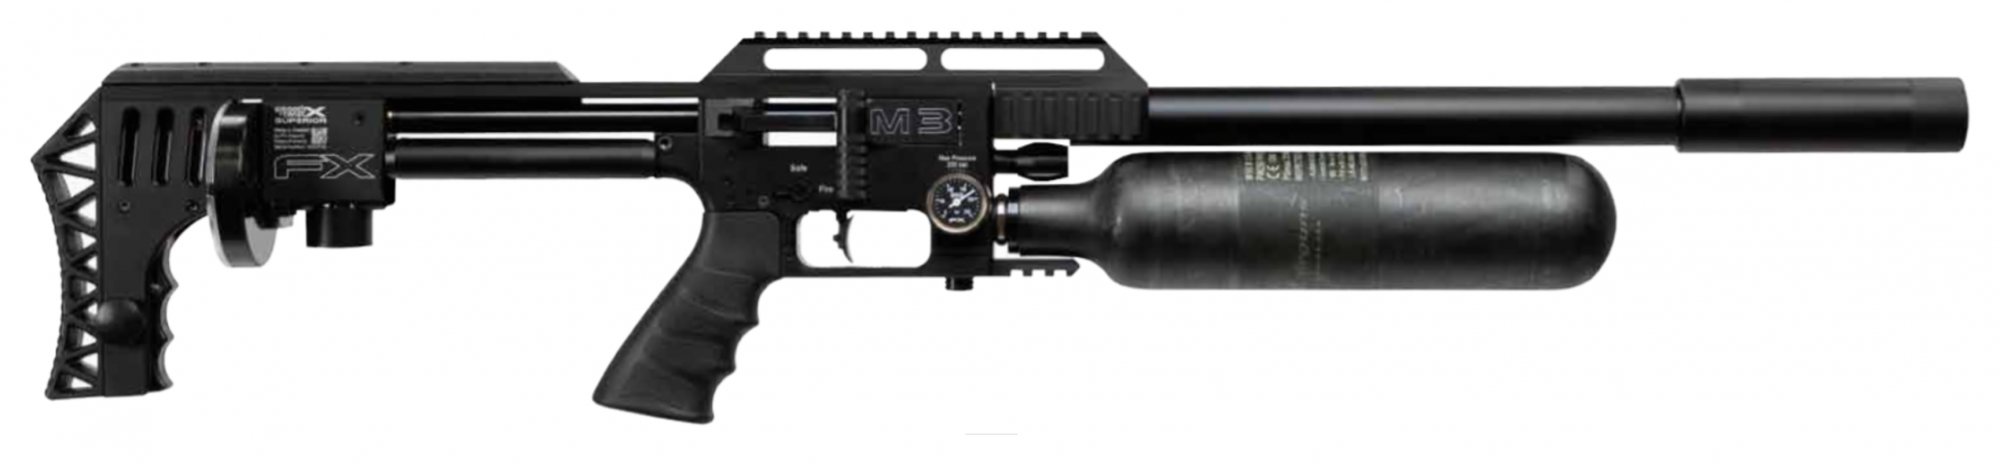 Fx Airguns Fx Impact M3 Black Pcp Air Rifle Rifleman Firearms 0854